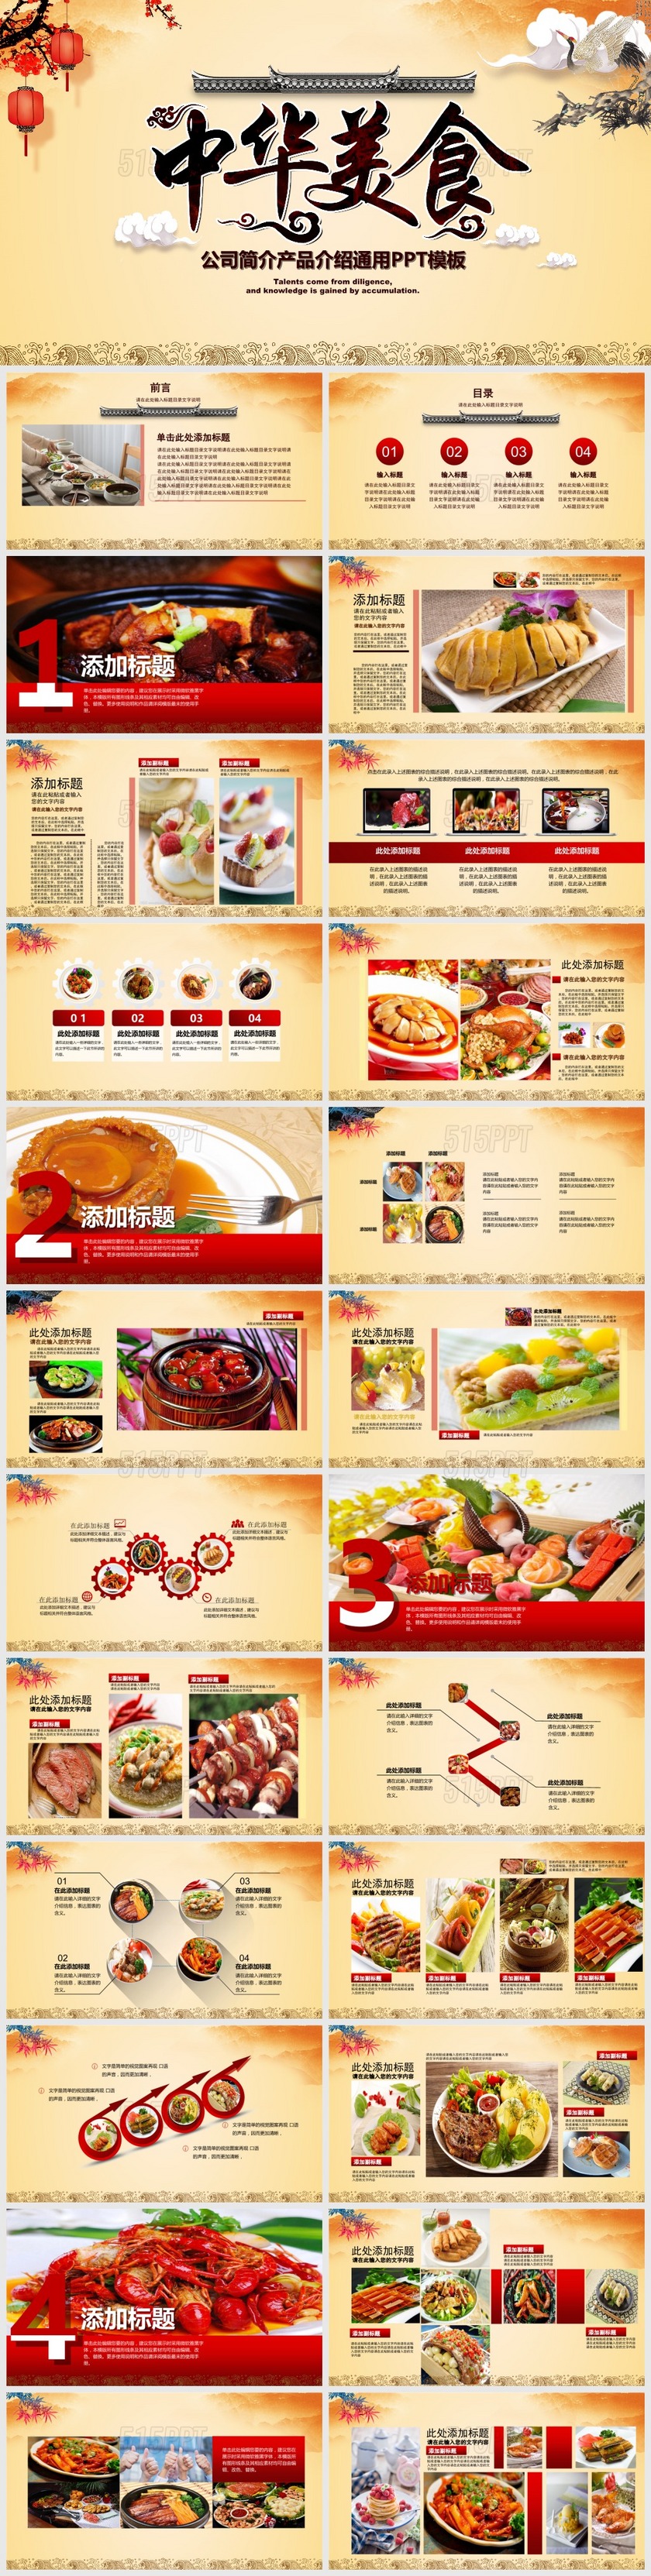 中华美食公司简介产品介绍通用PPT模板